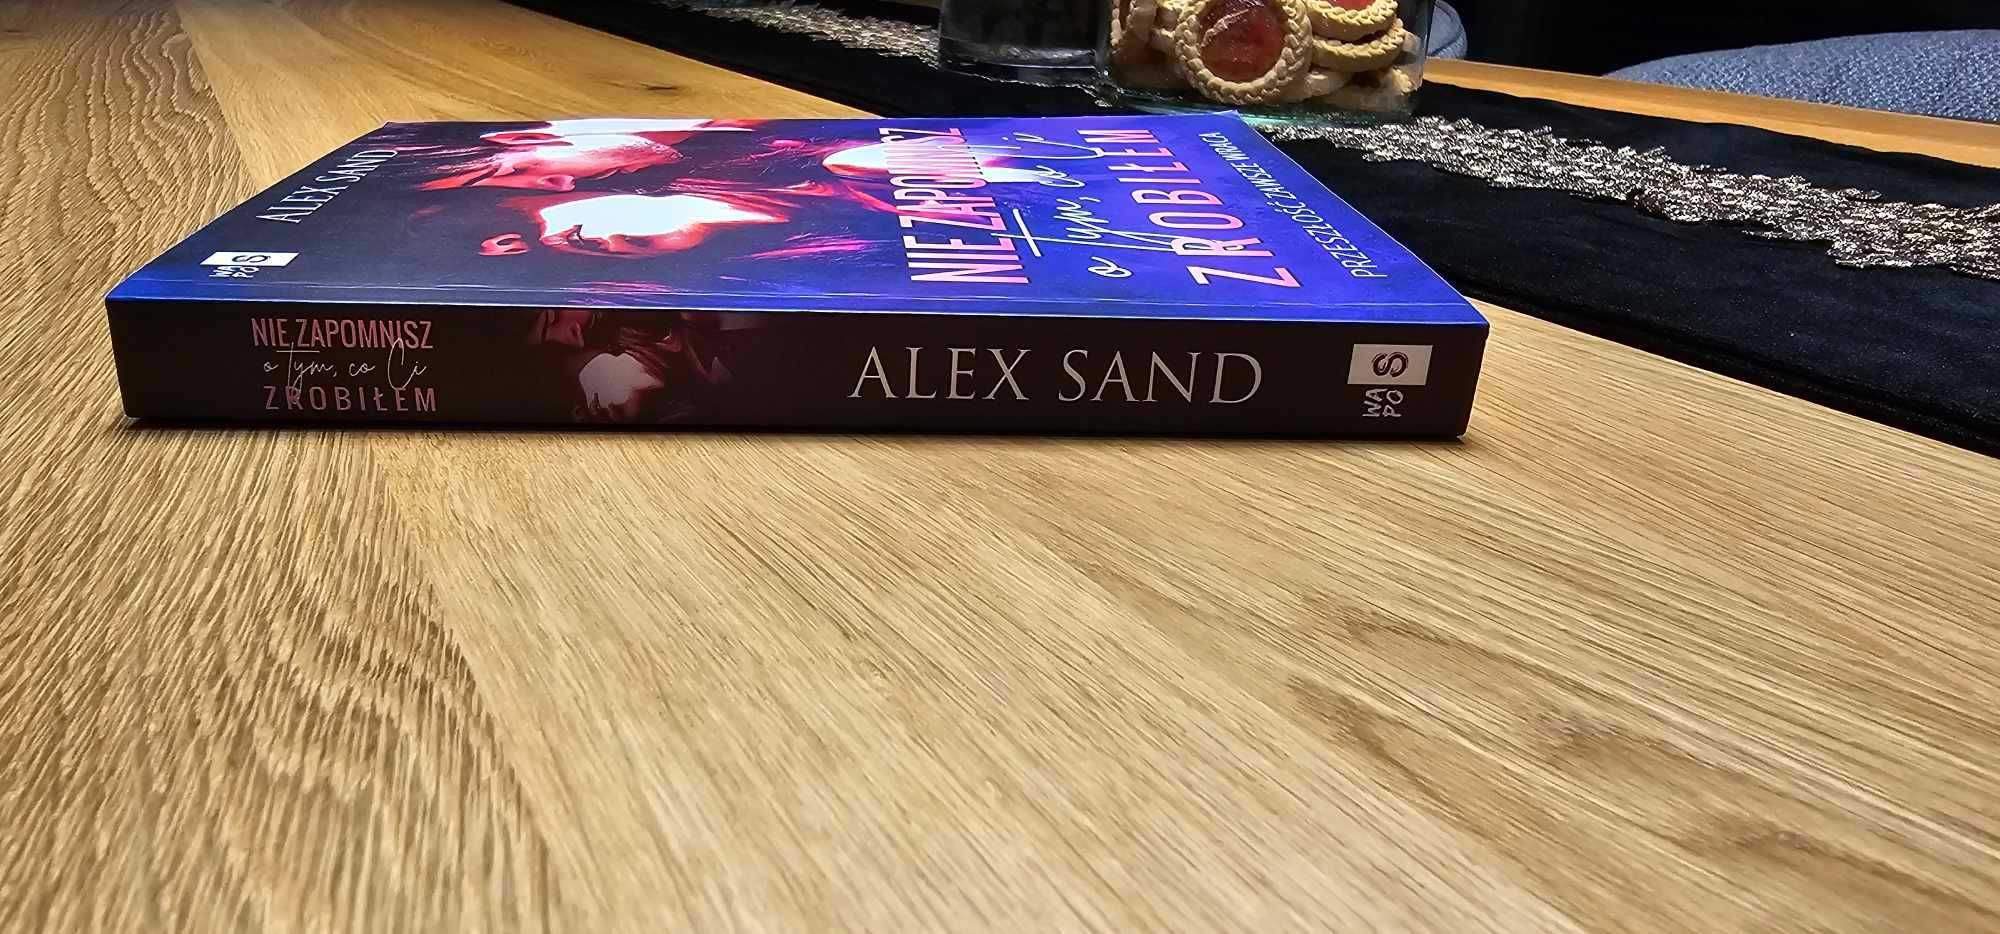 Sprzedam Książkę, Alex Sand